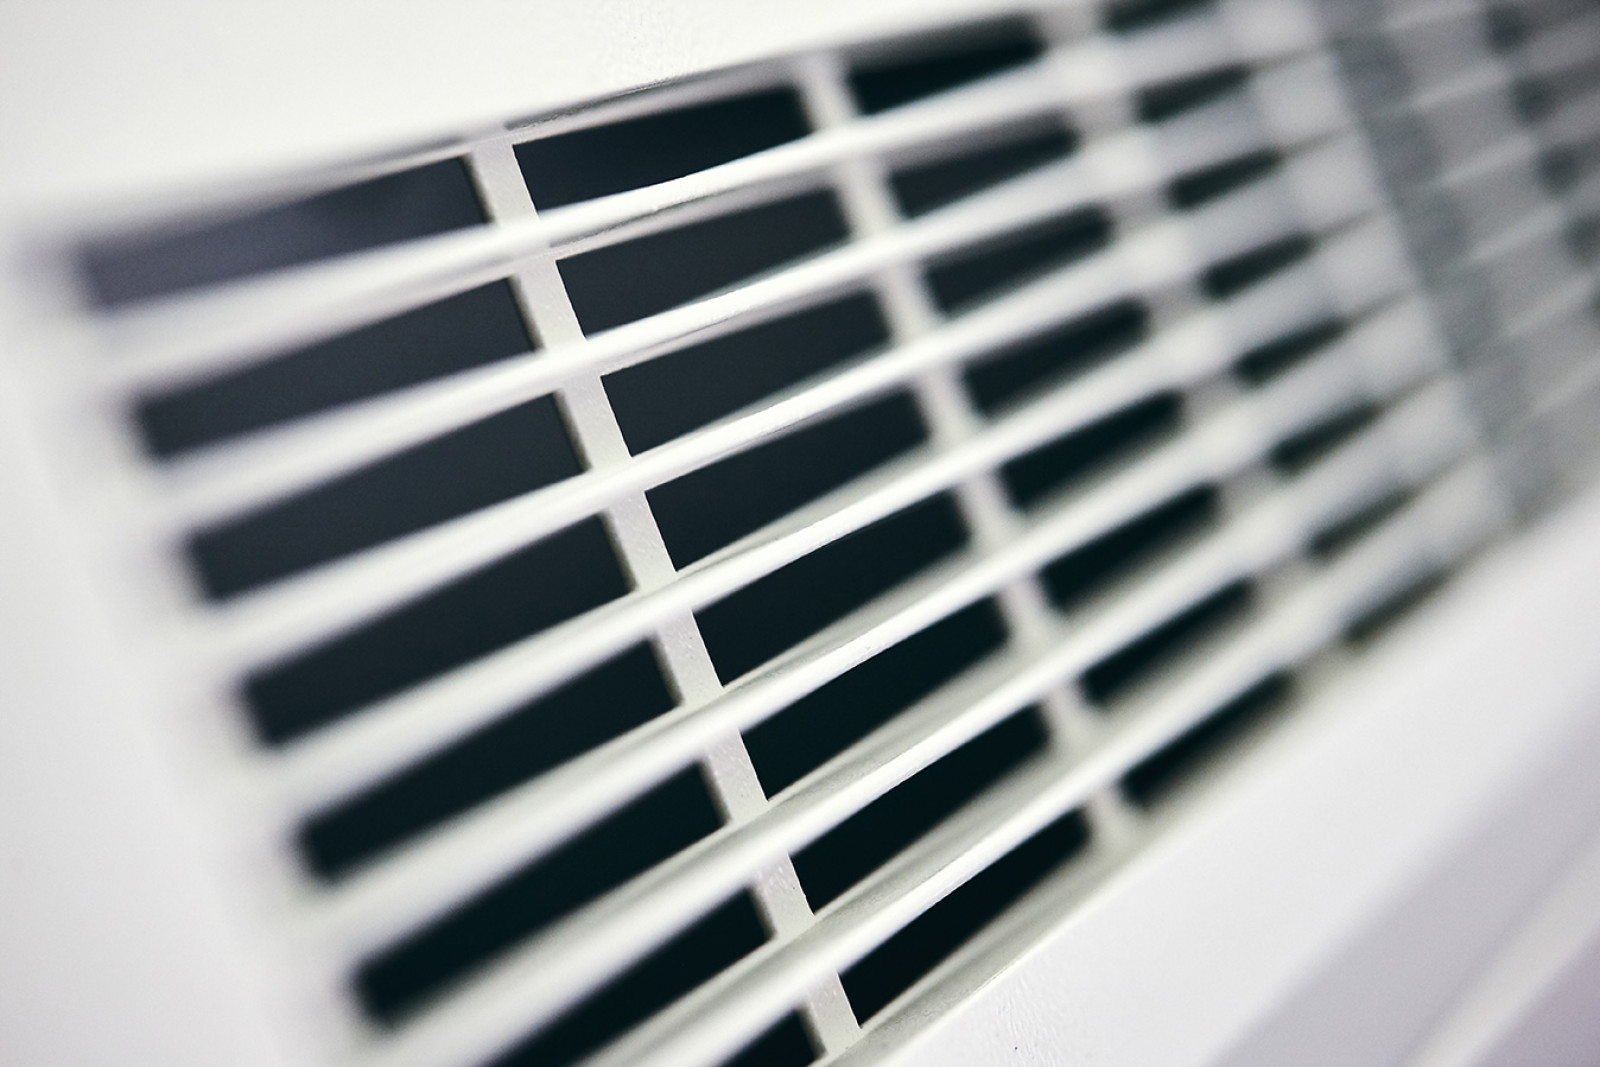 The benefits of fan convectors vs. traditional radiators